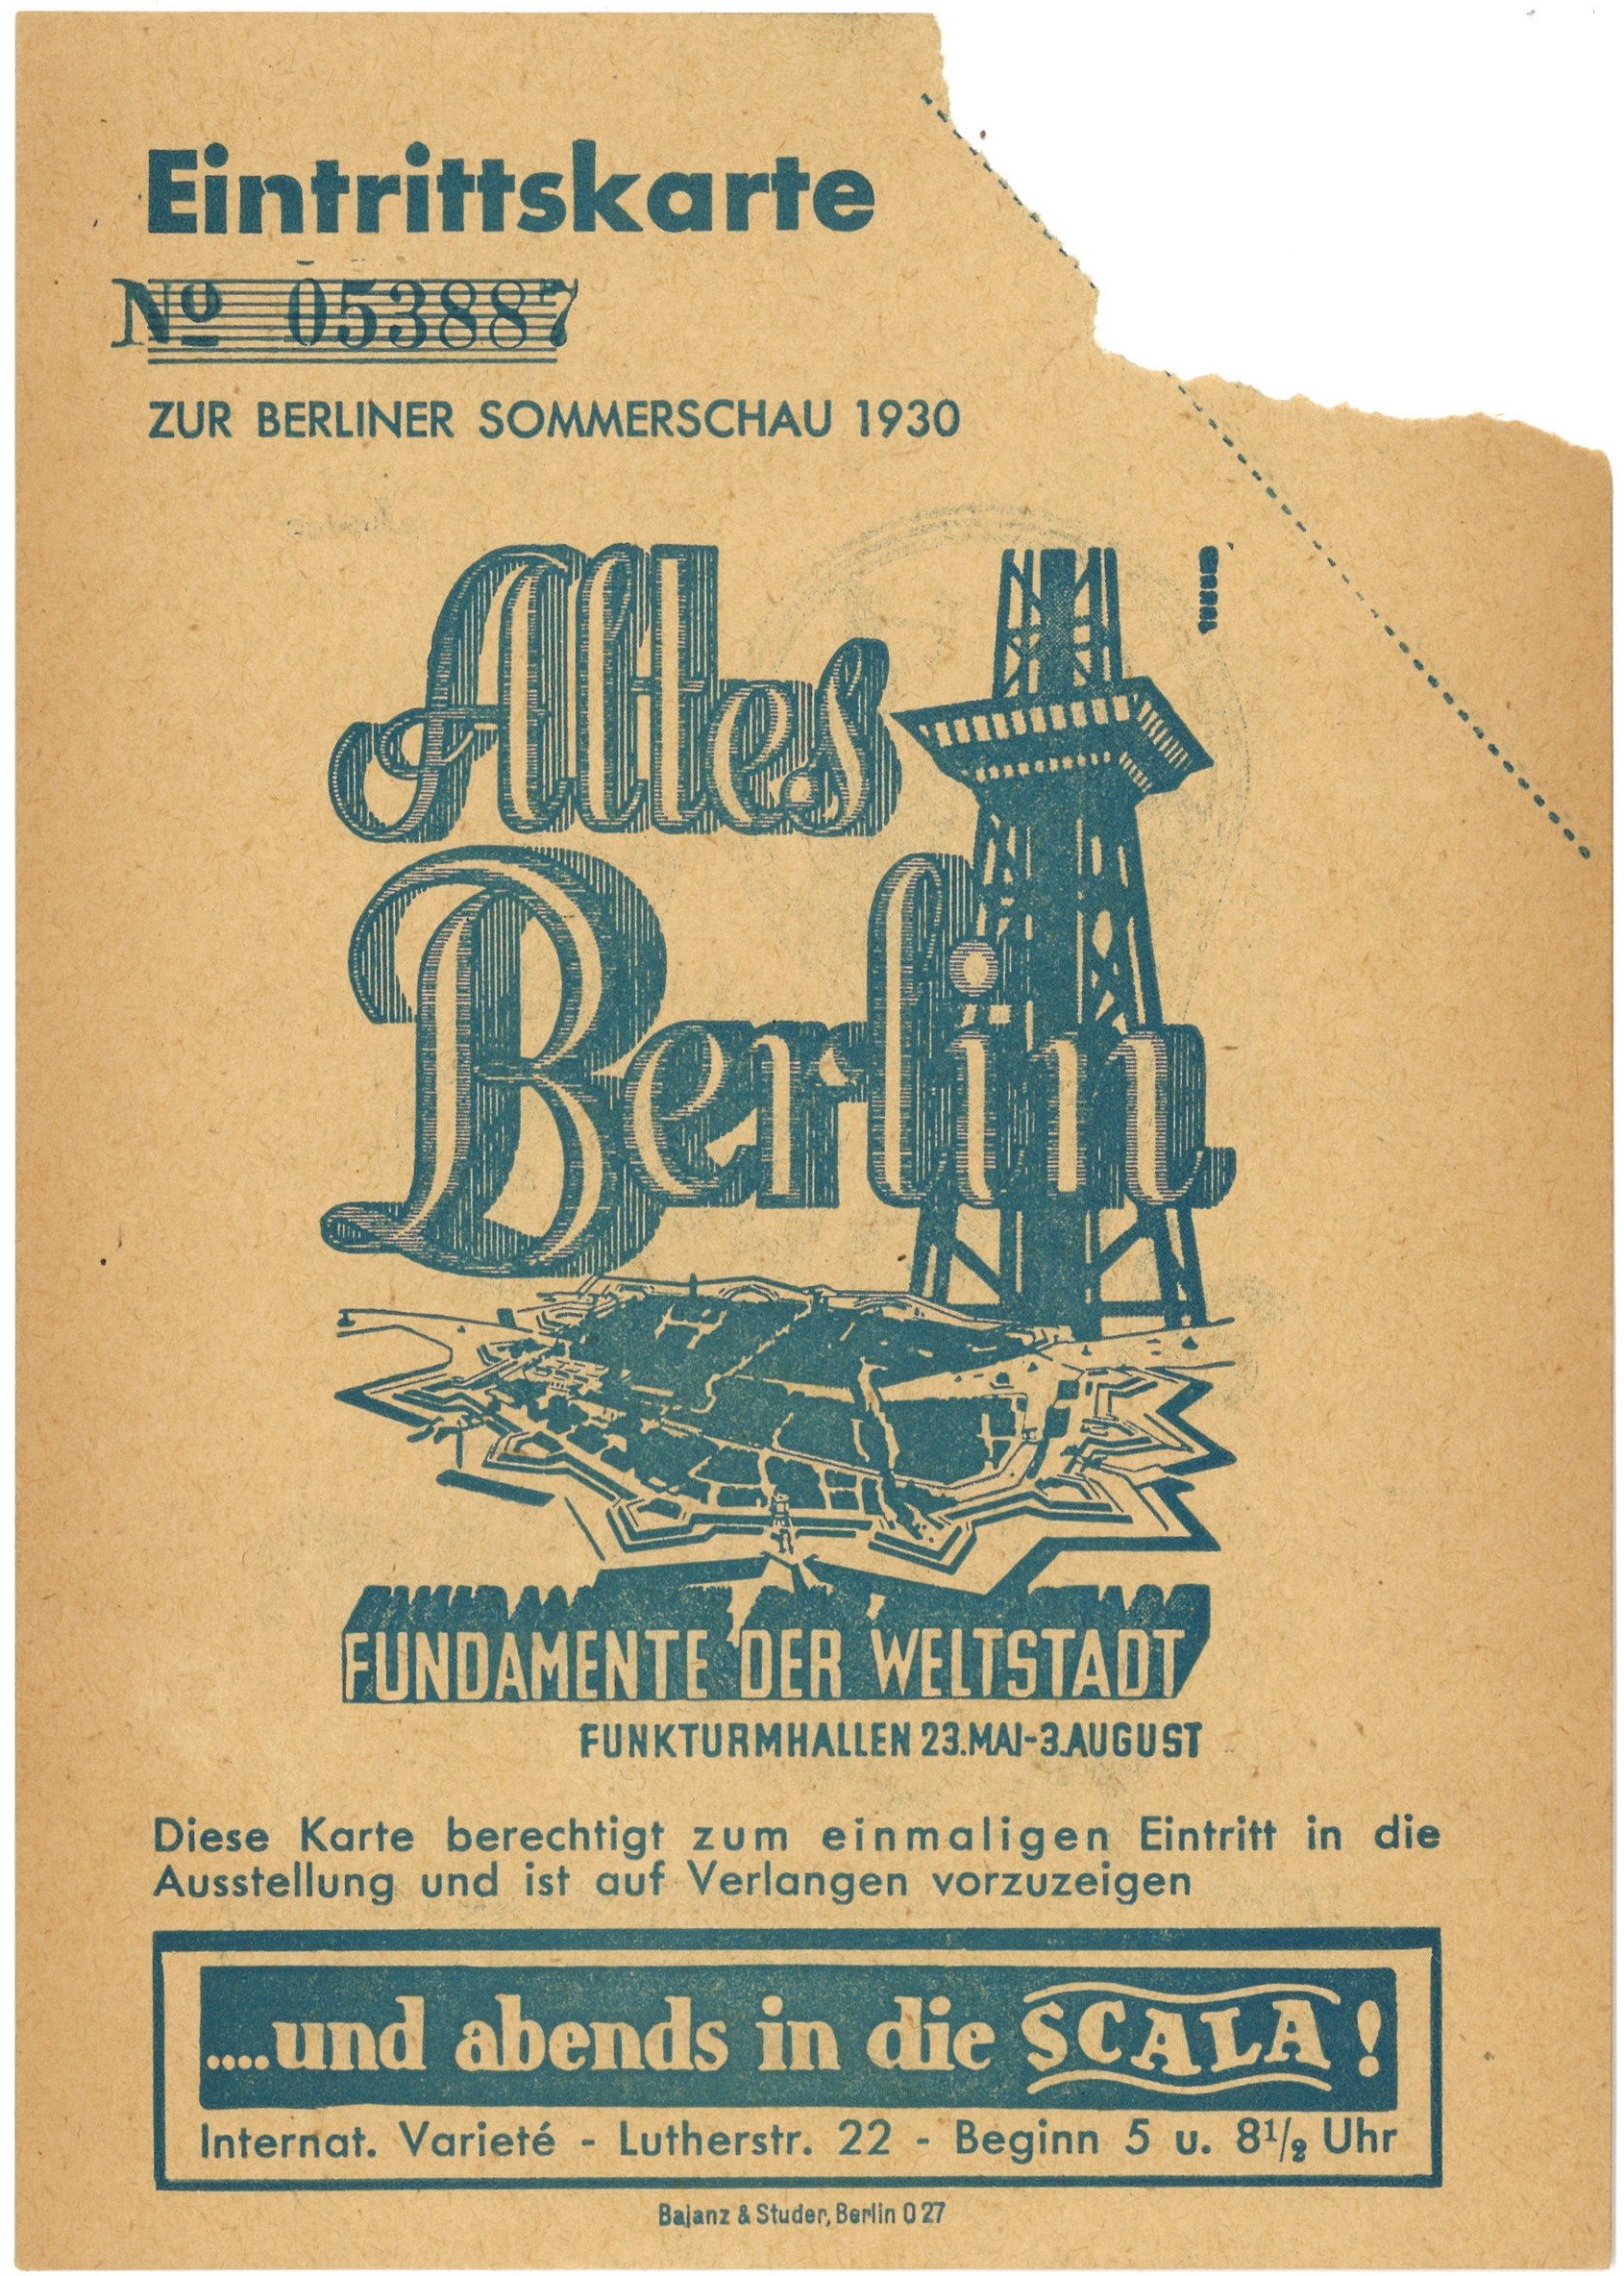 Berlin-Charlottenburg: Ausstellung "Altes Berlin" in den Funkturmhallen 1930 (Landesgeschichtliche Vereinigung für die Mark Brandenburg e.V., Archiv CC BY)